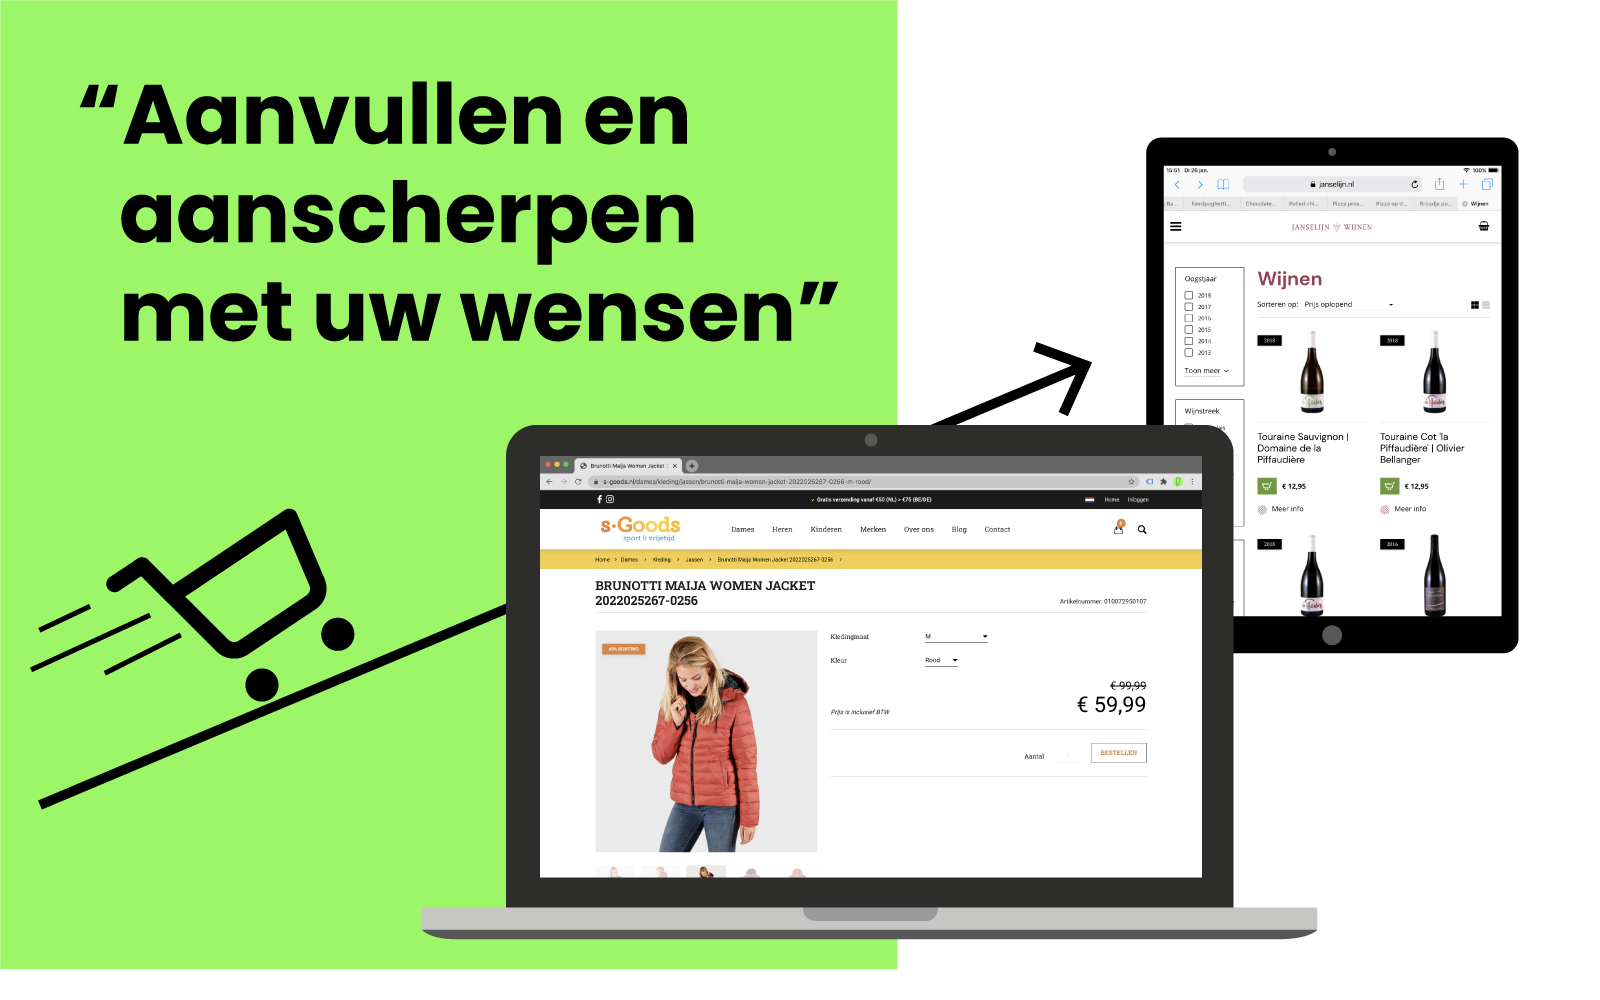 Een webshop die uw boost! - info over een webshop? Mail naar studio@reclameloods.nl